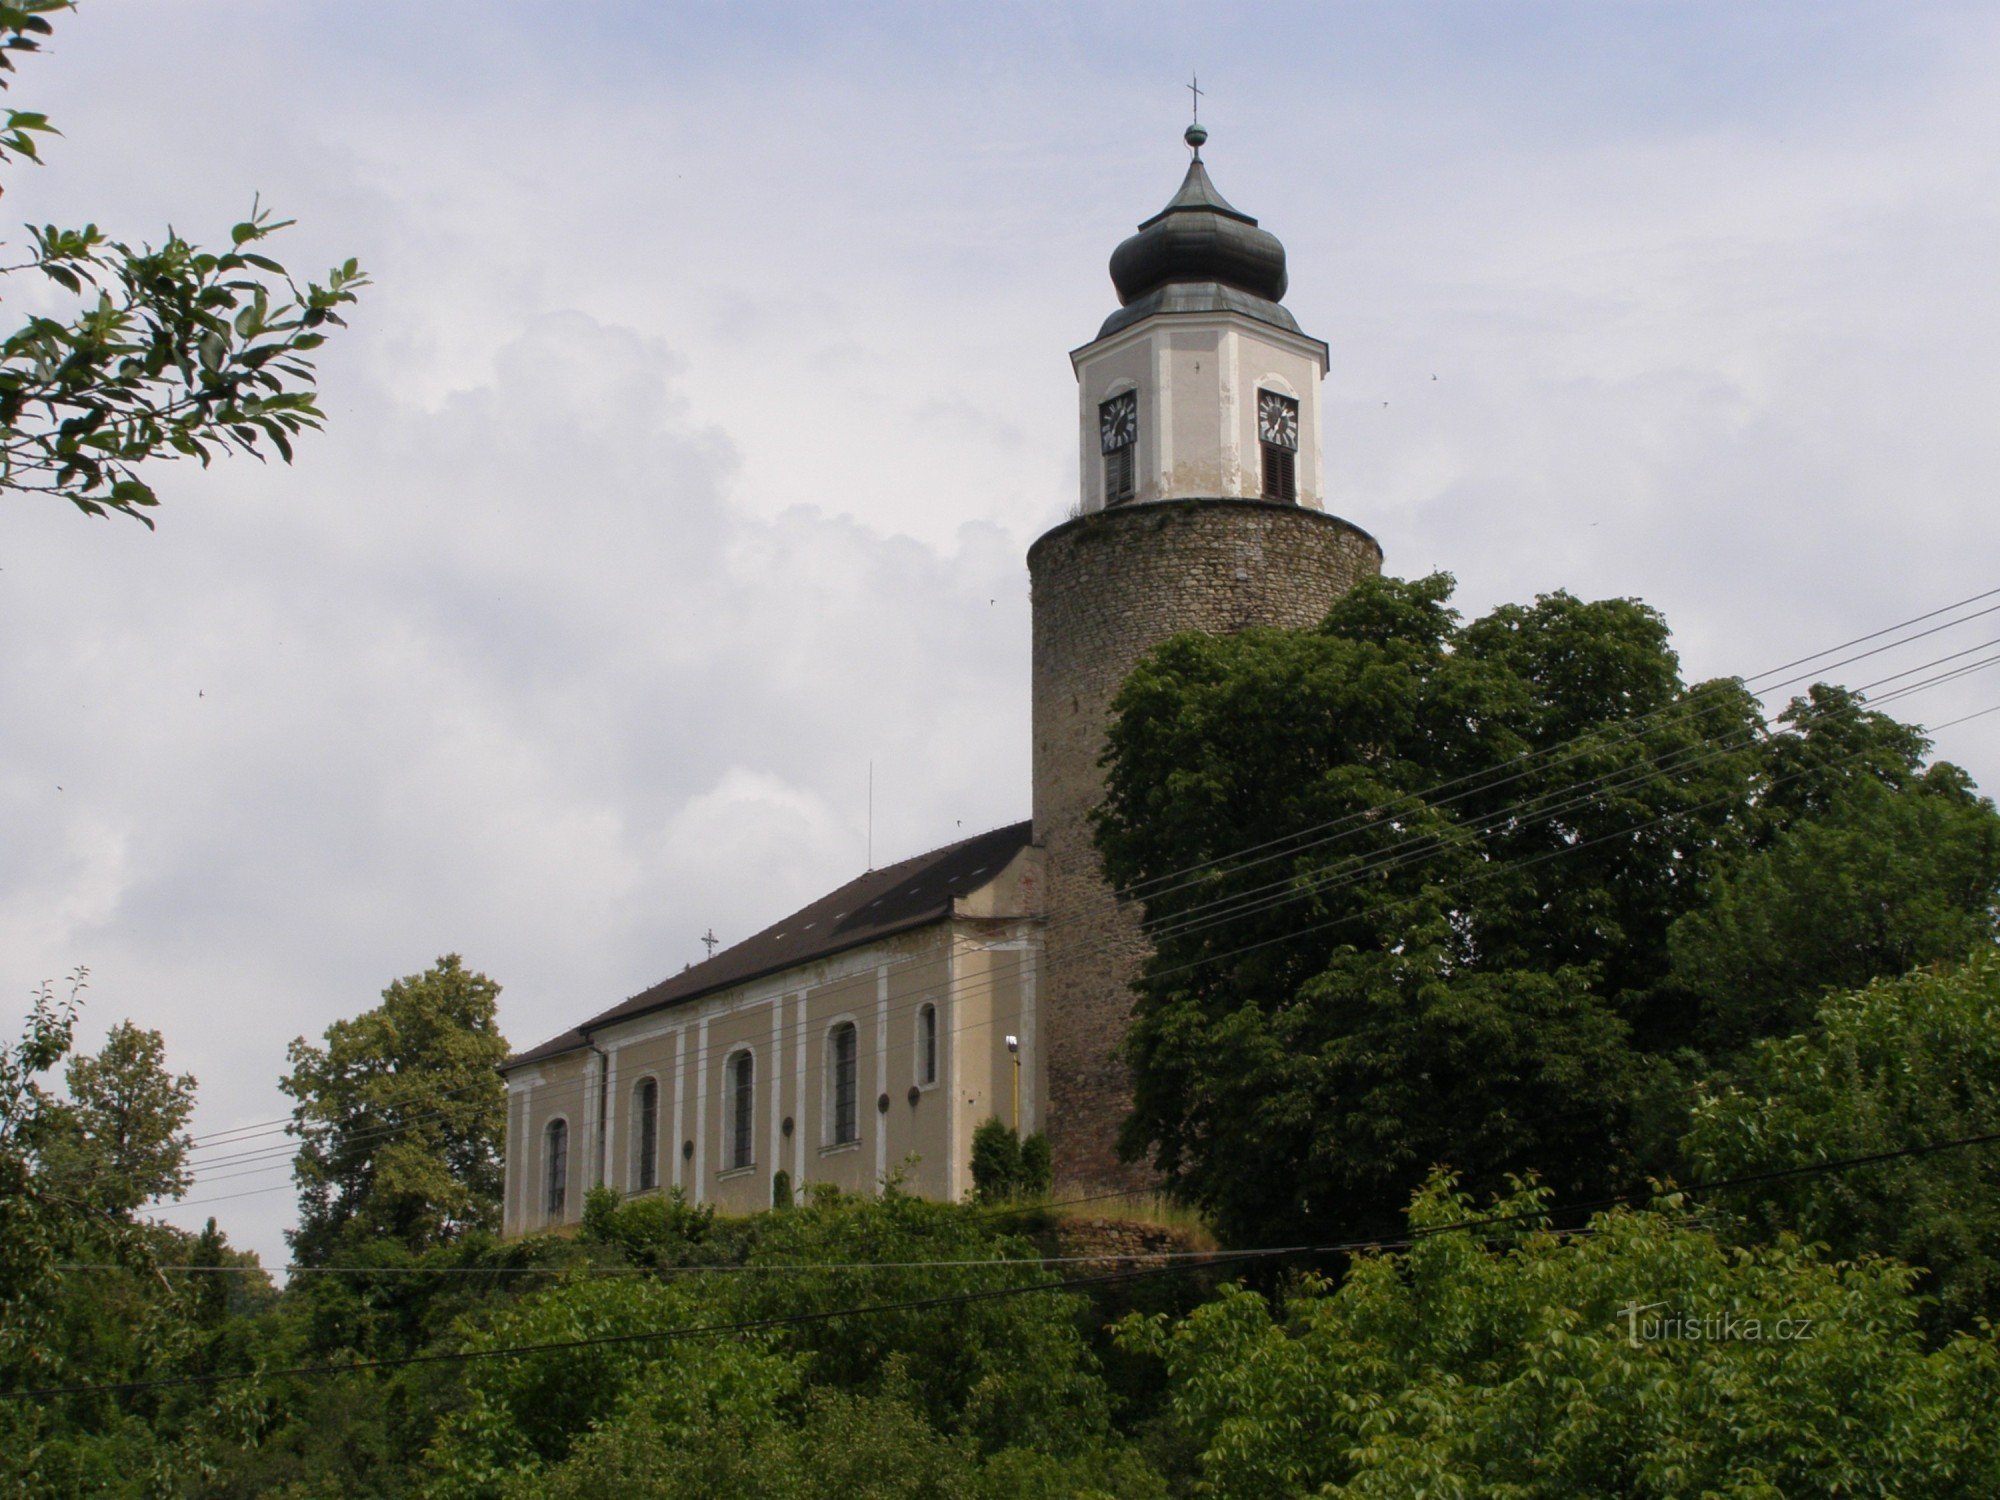 Жулова - костел св. Йосифа з вежею замку